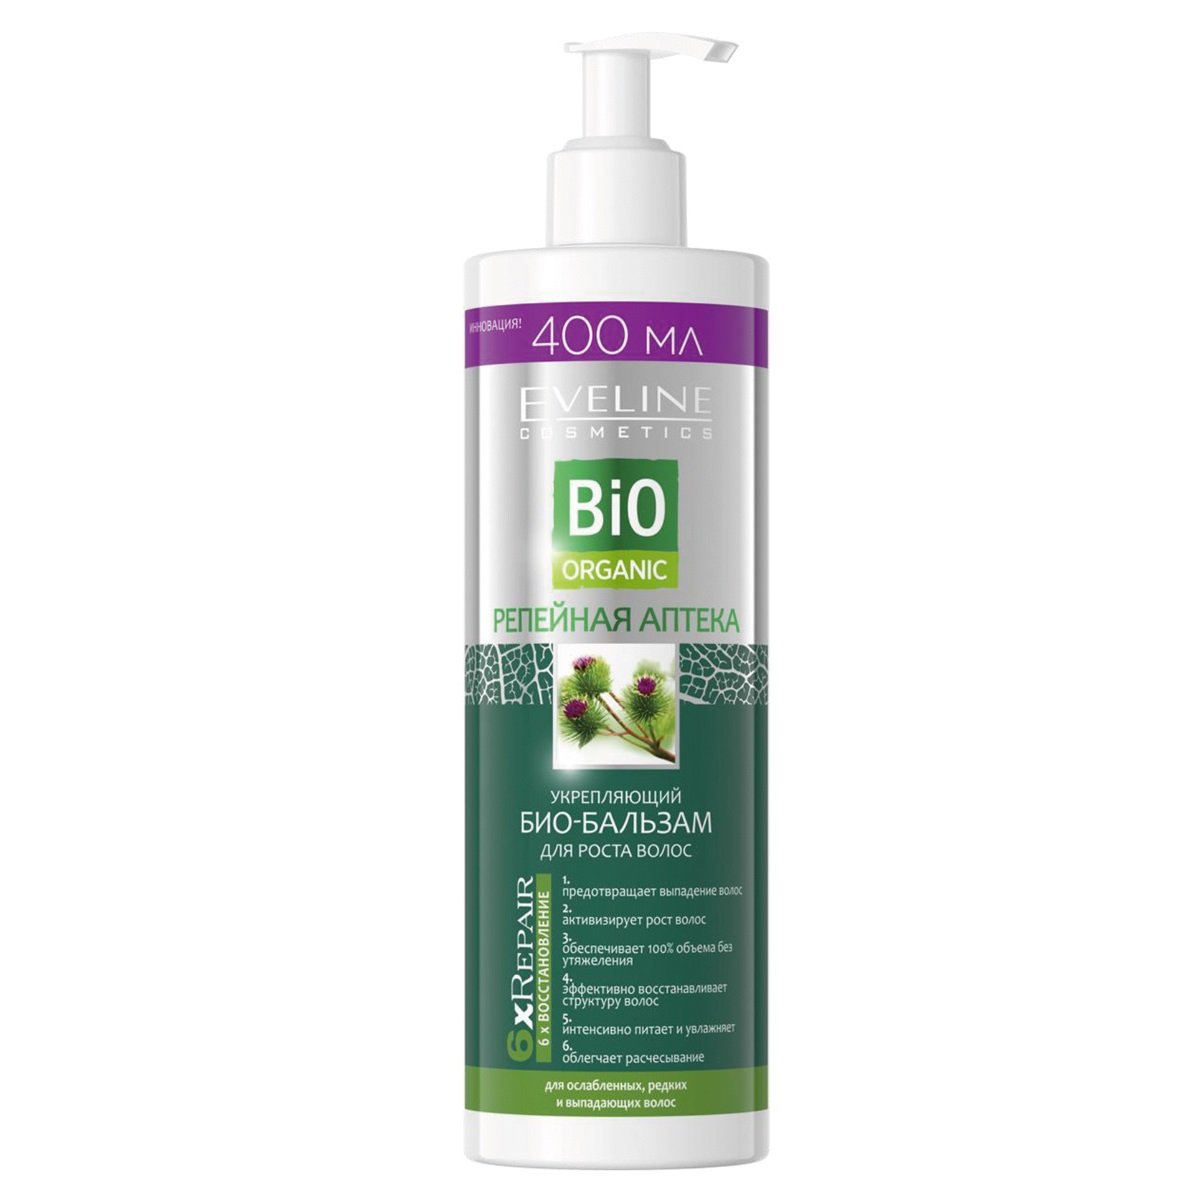 Укрепляющий био-бальзам для роста волос Eveline Репейная Аптека Bio Organic, 400 мл (B400BOOD) - фото 1